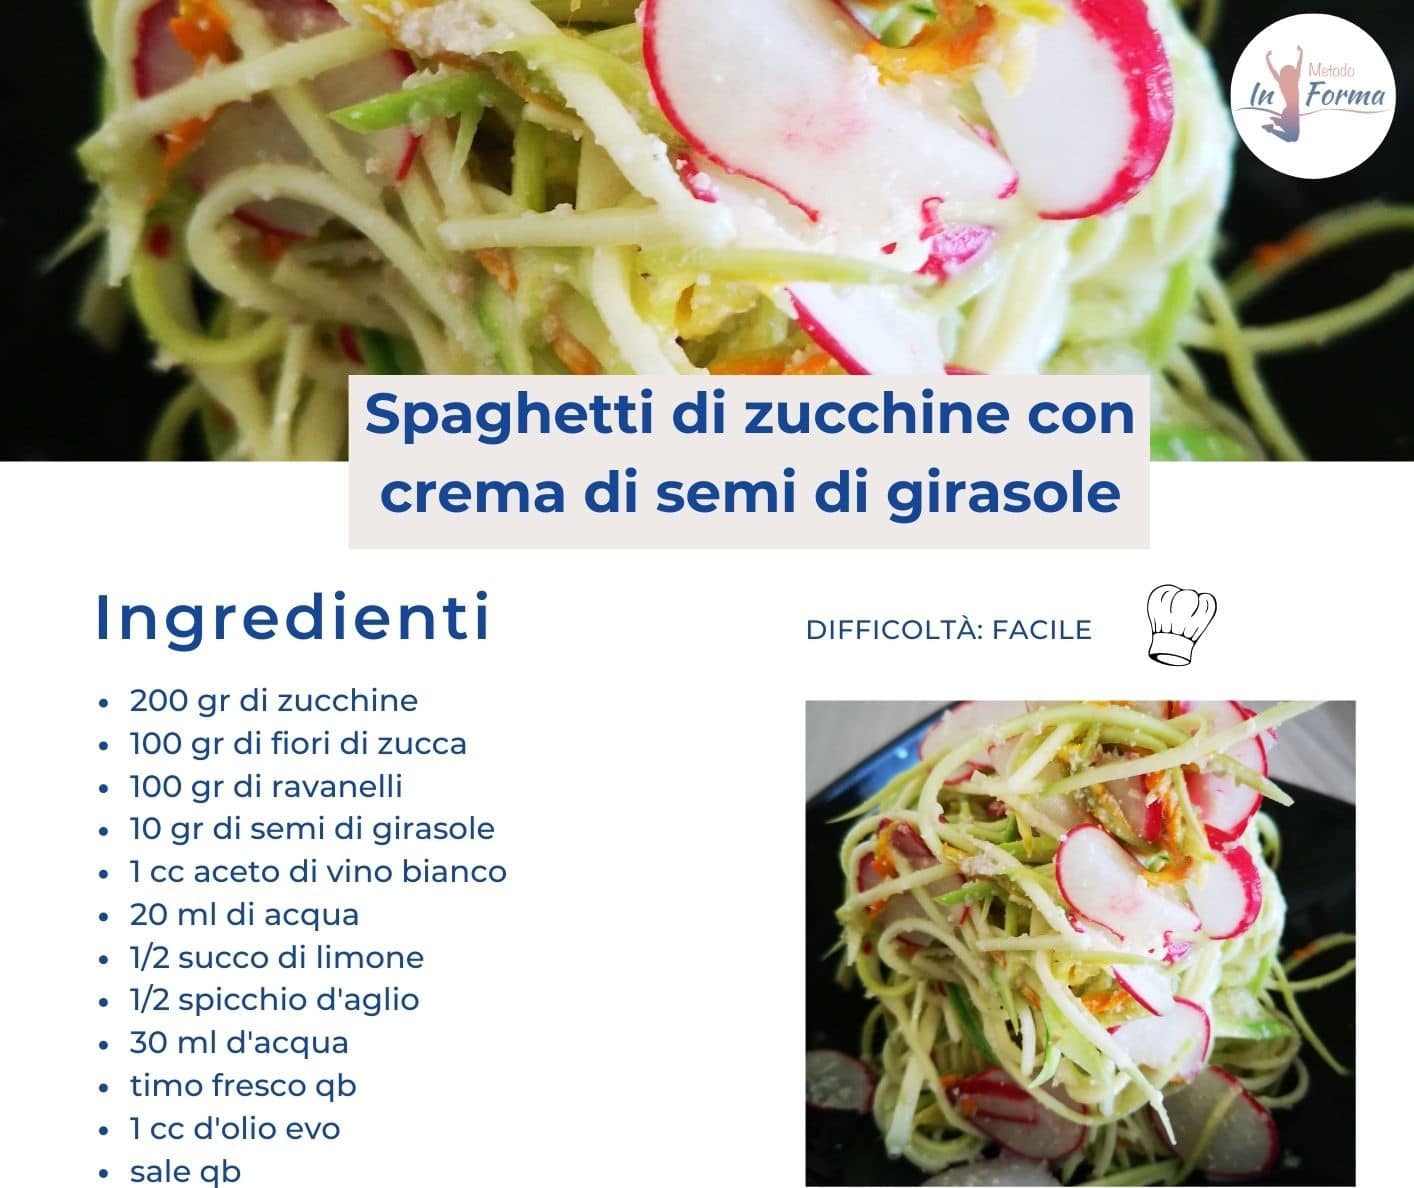 Spaghetti di zucchine con crema di semi di girasole | Metodo InForma